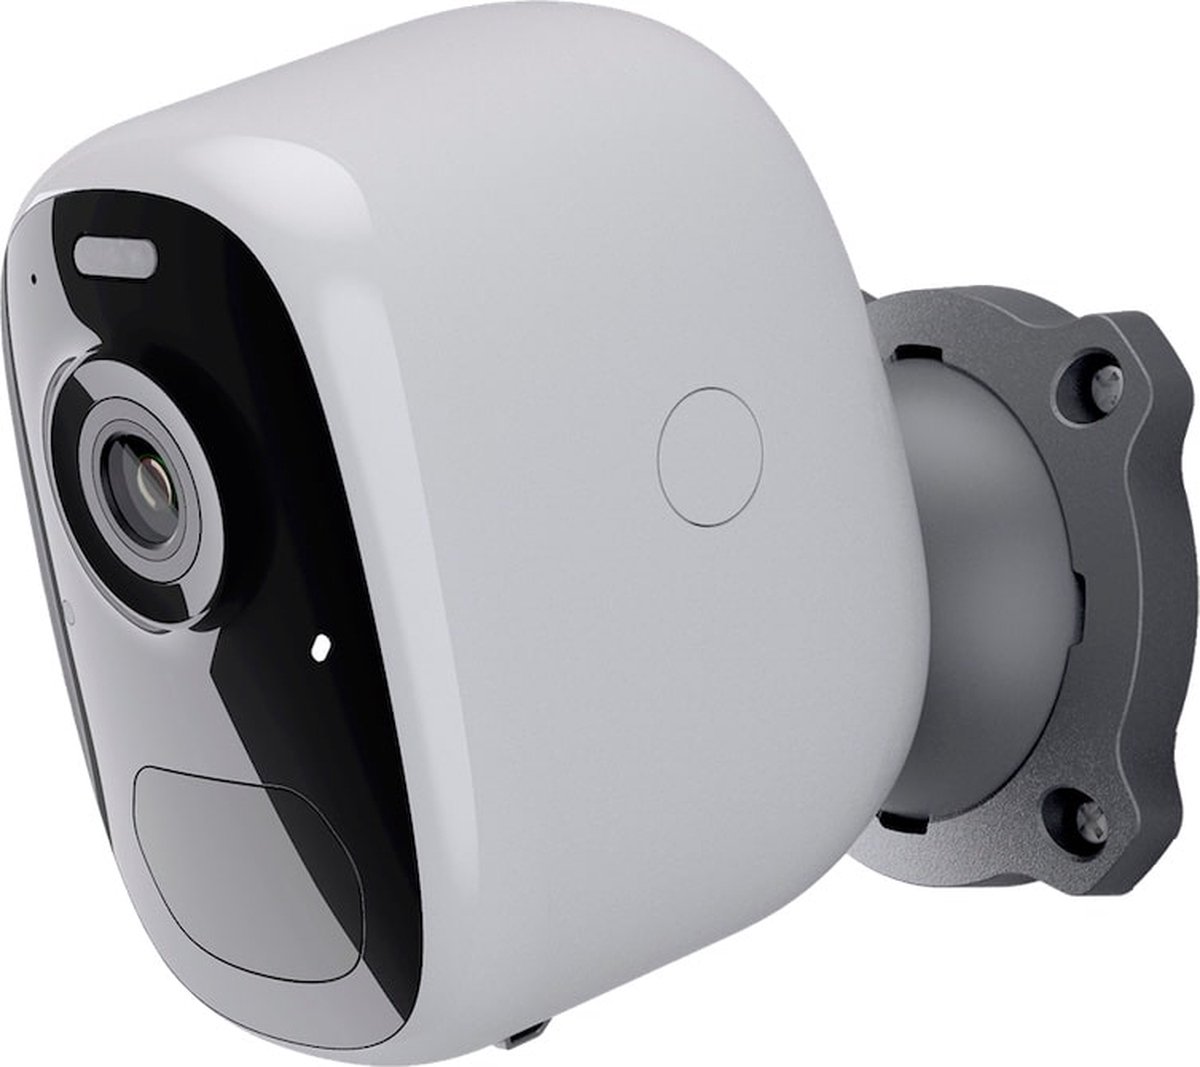 VicoHome CG122 volledig draadvrije 4 megapixel WiFi accu camera voor buiten met IR nachtzicht, wit licht, PIR, microSD en 2-weg audio - Beveiligingscamera IP camera bewakingscamera camerabewaking veiligheidscamera beveiliging netwerk camera webcam